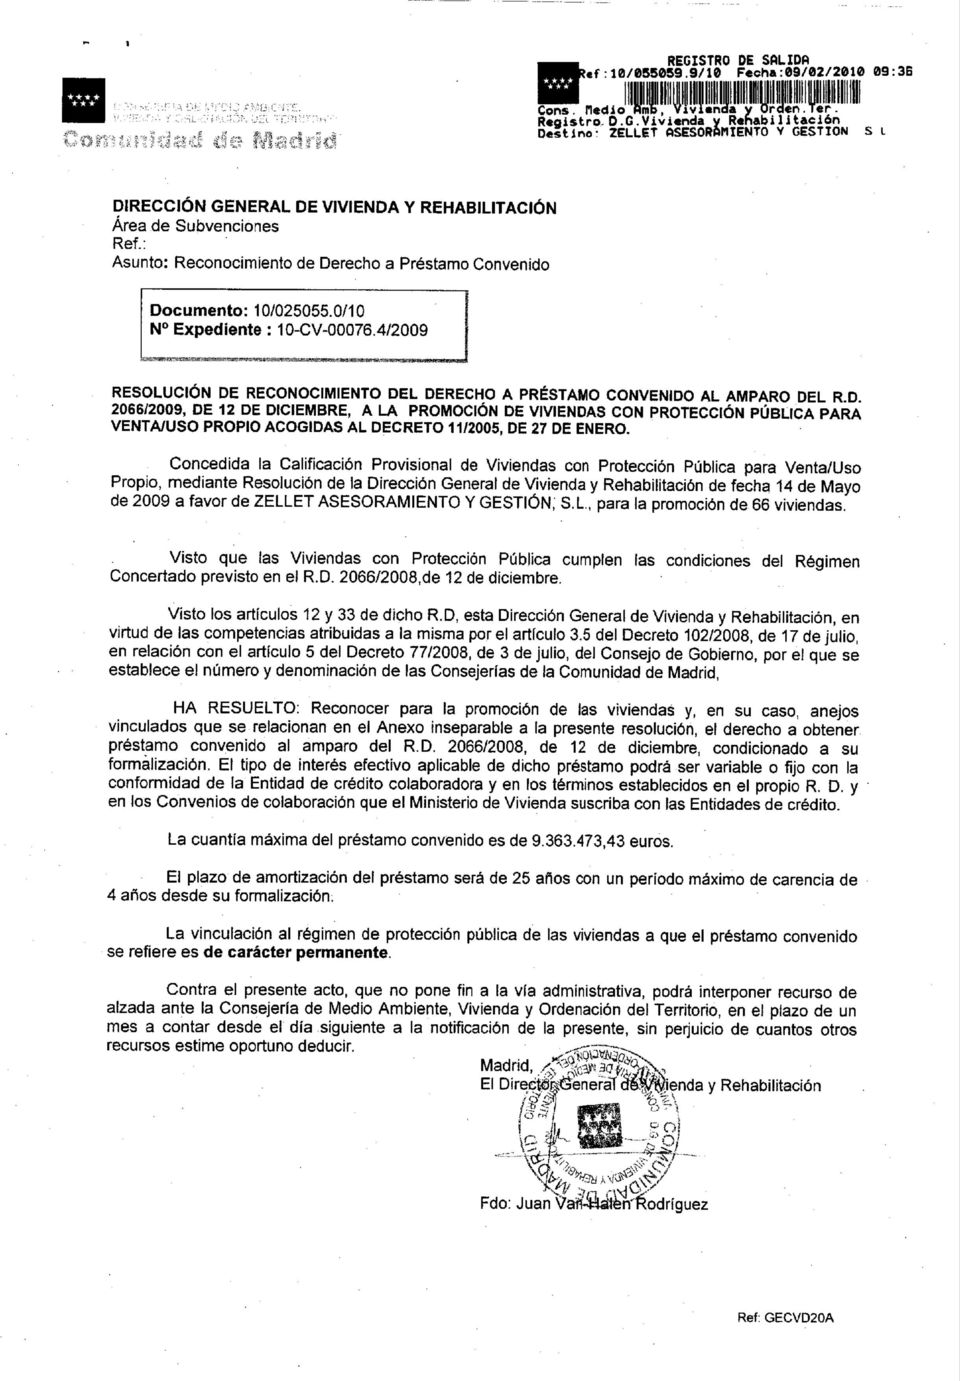 Concedida la Calificación Provisional de iviendas con Protección Pública para enta/uso Propio, mediante Resolución de la Dirección General de ivienda y Rehabilitación de fecha 14 de Mayo de 2009 a